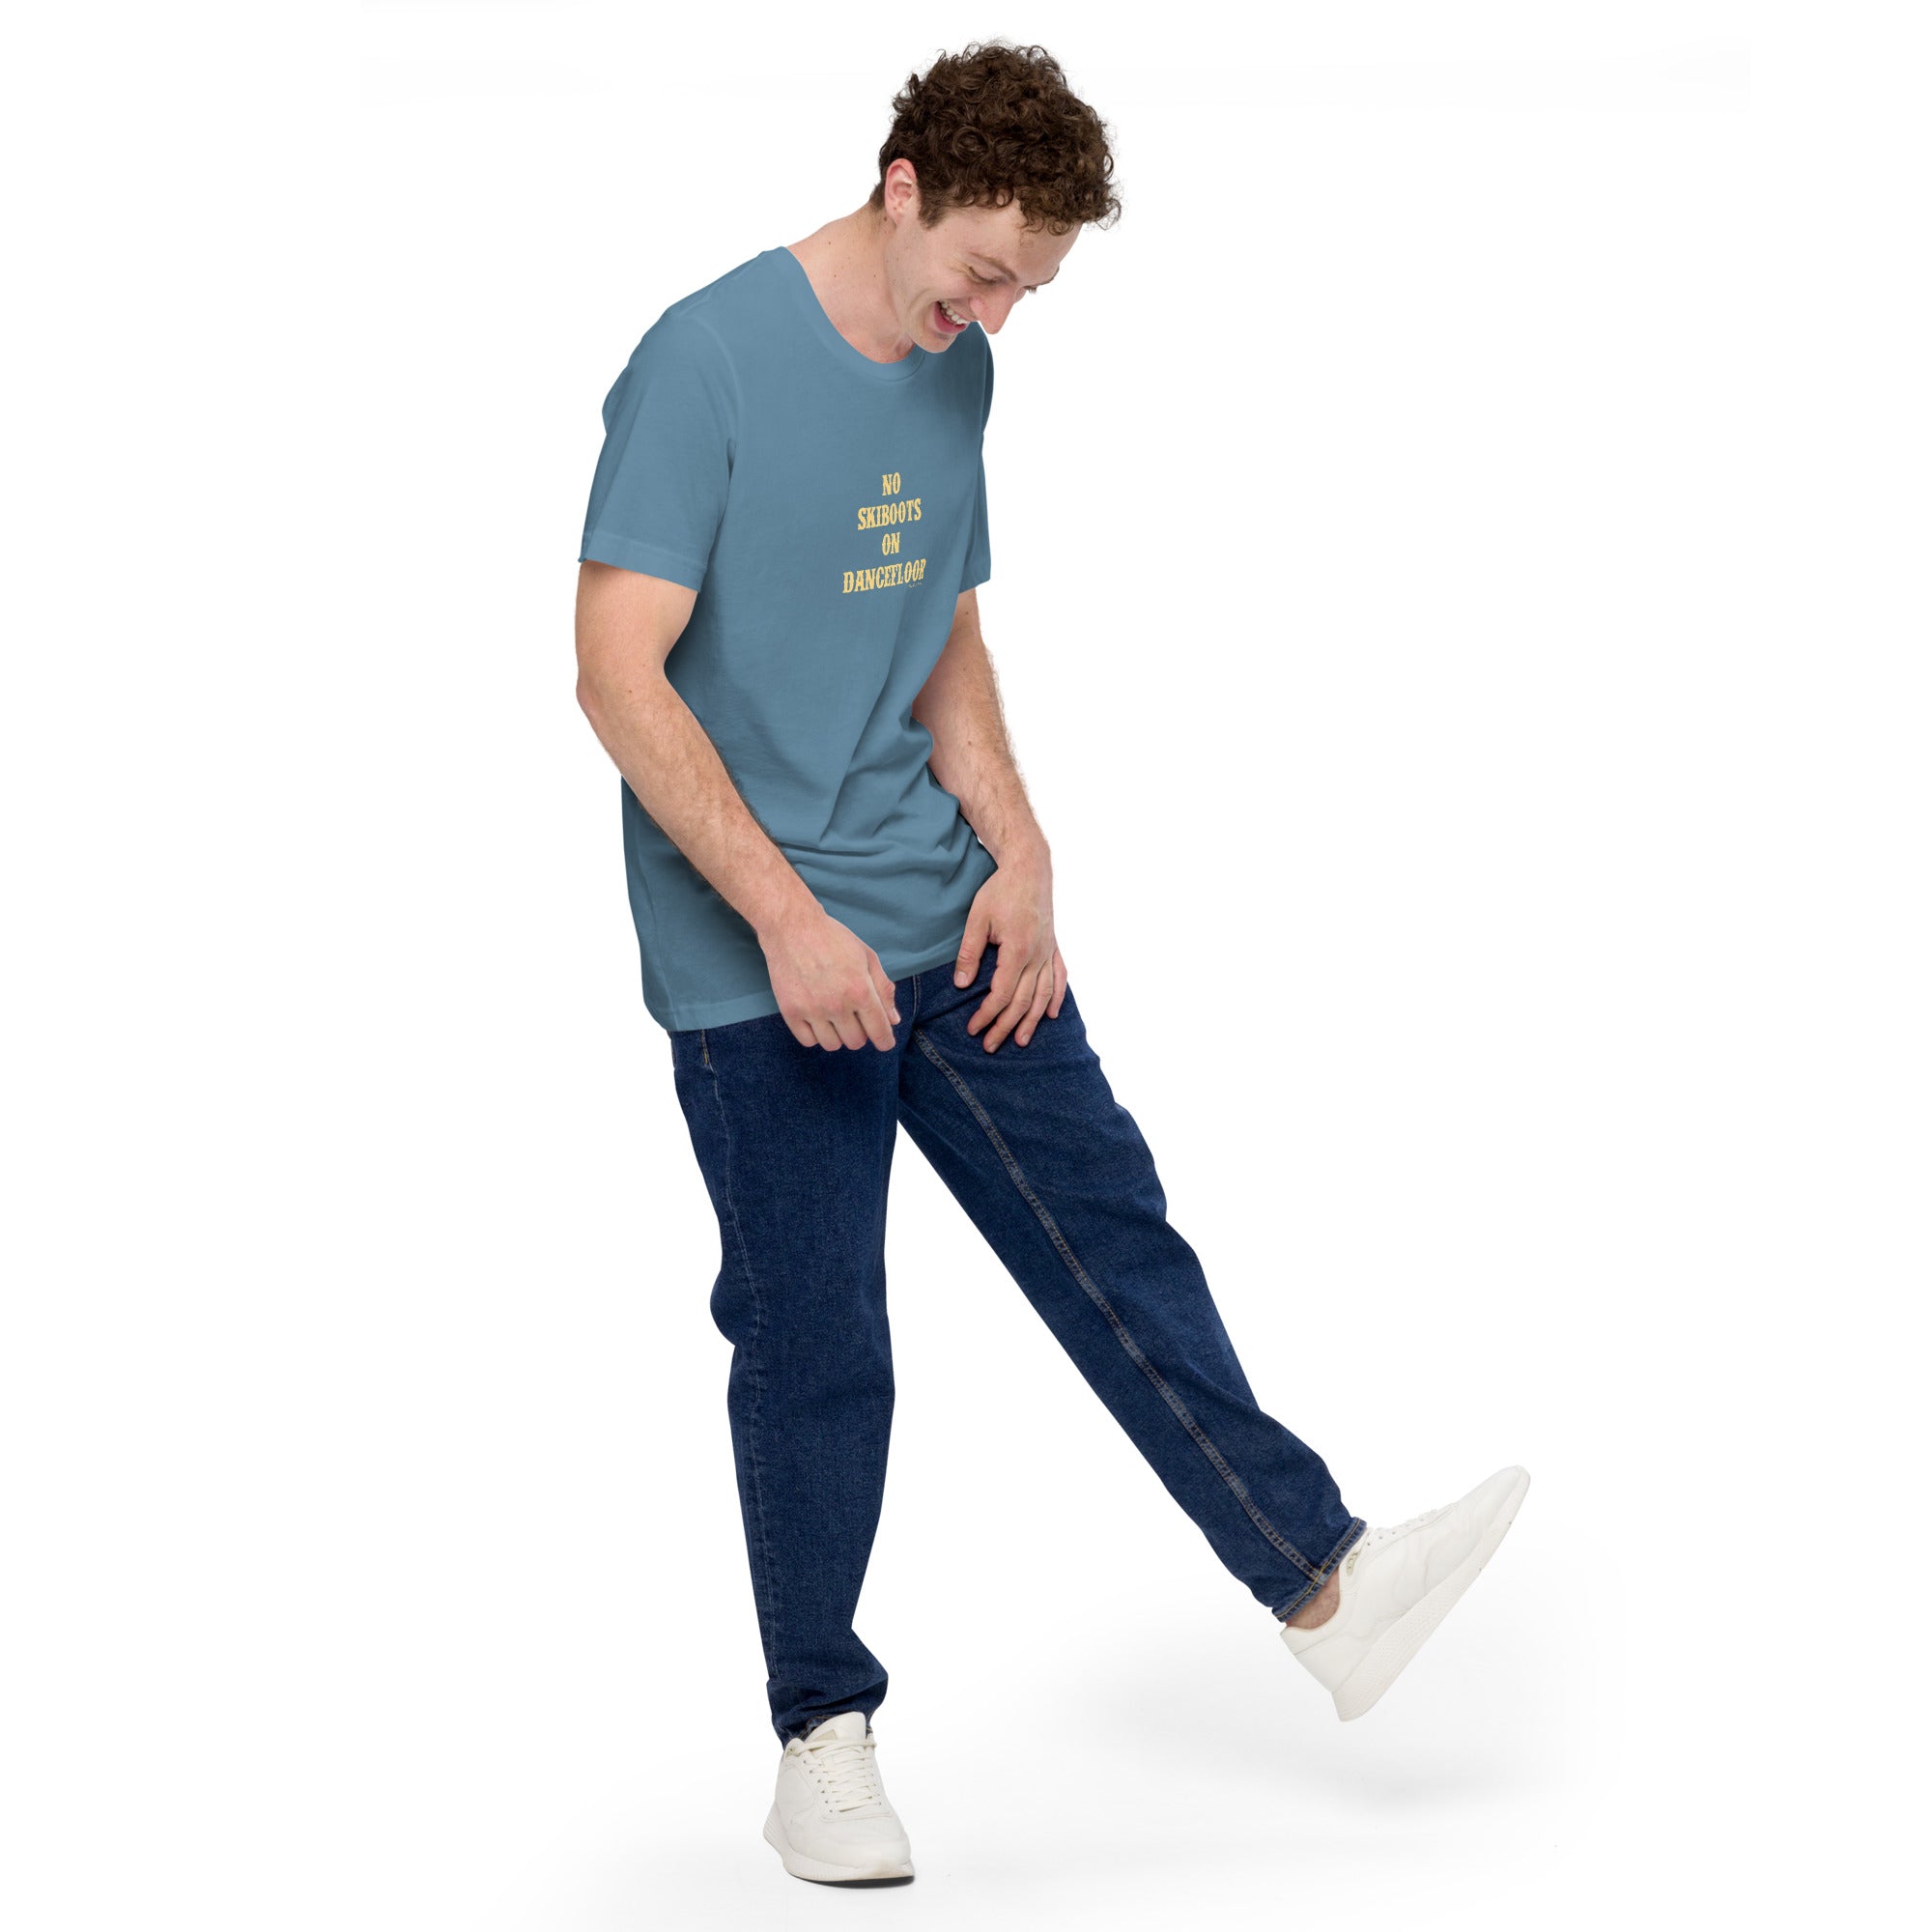 T-shirt en coton unisexe No Skiboots on Dancefloor sur couleurs foncées